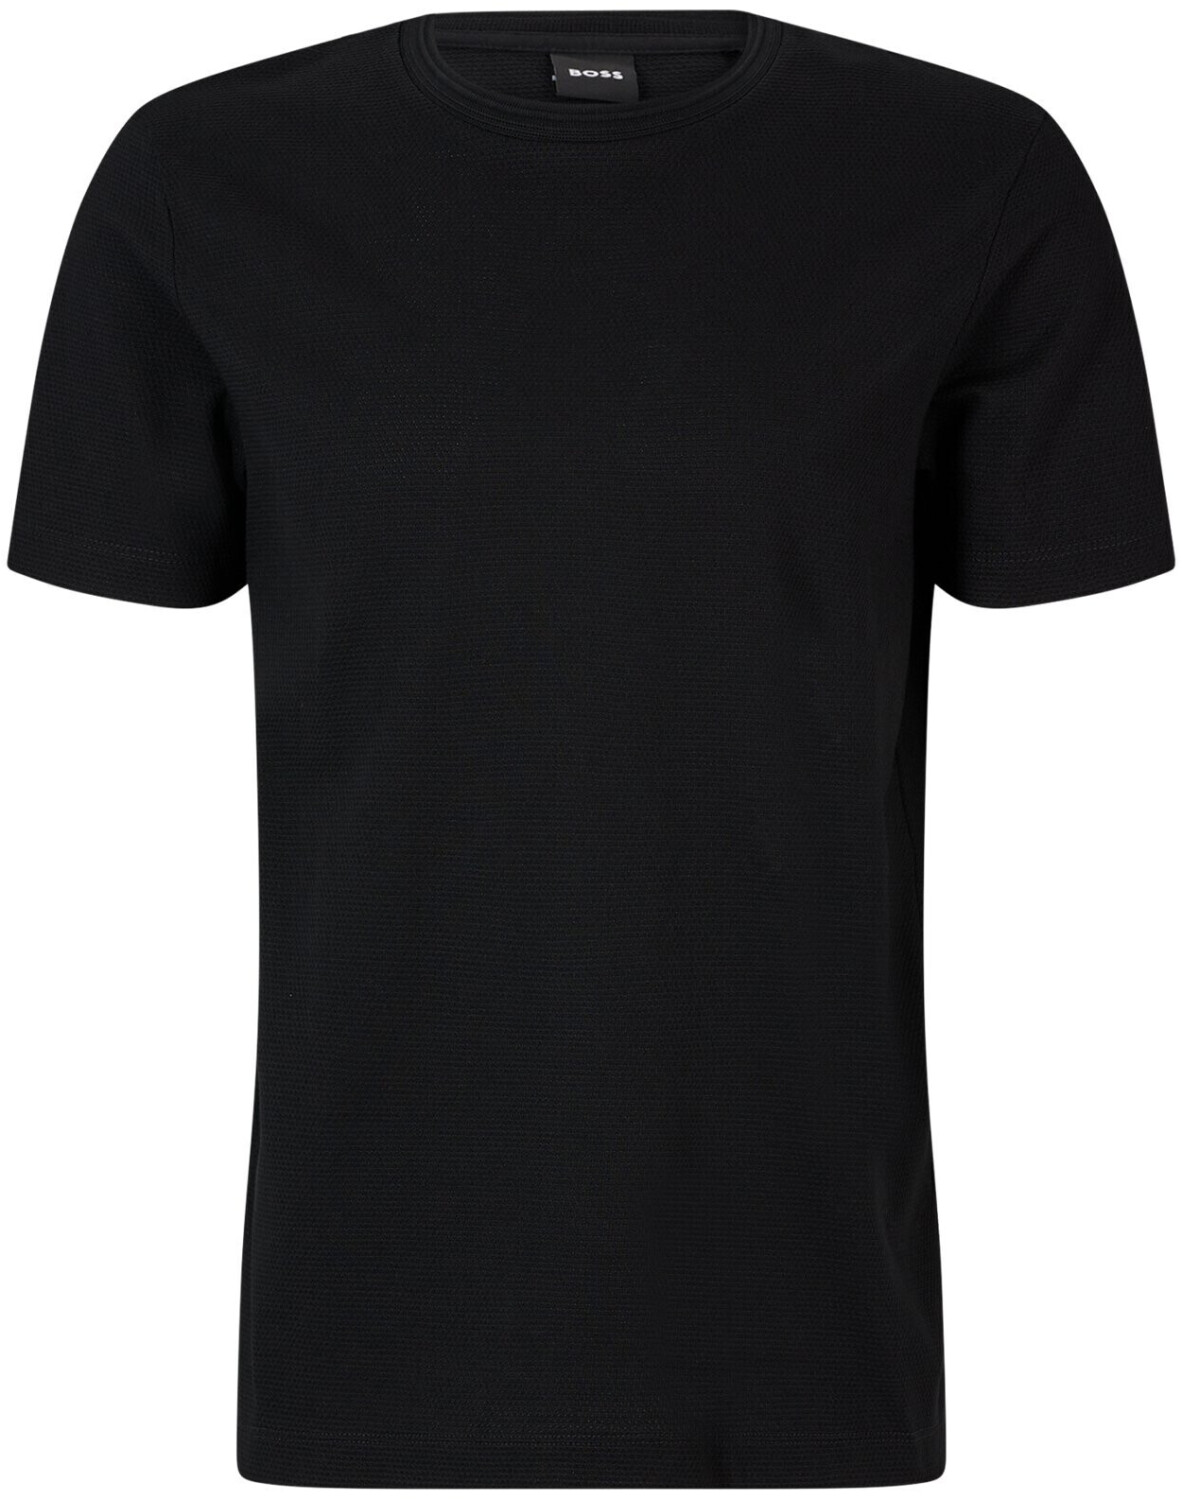 Buy Hugo Boss Tiburt 240 T-Shirt black (50452680-001) from £48.99 ...